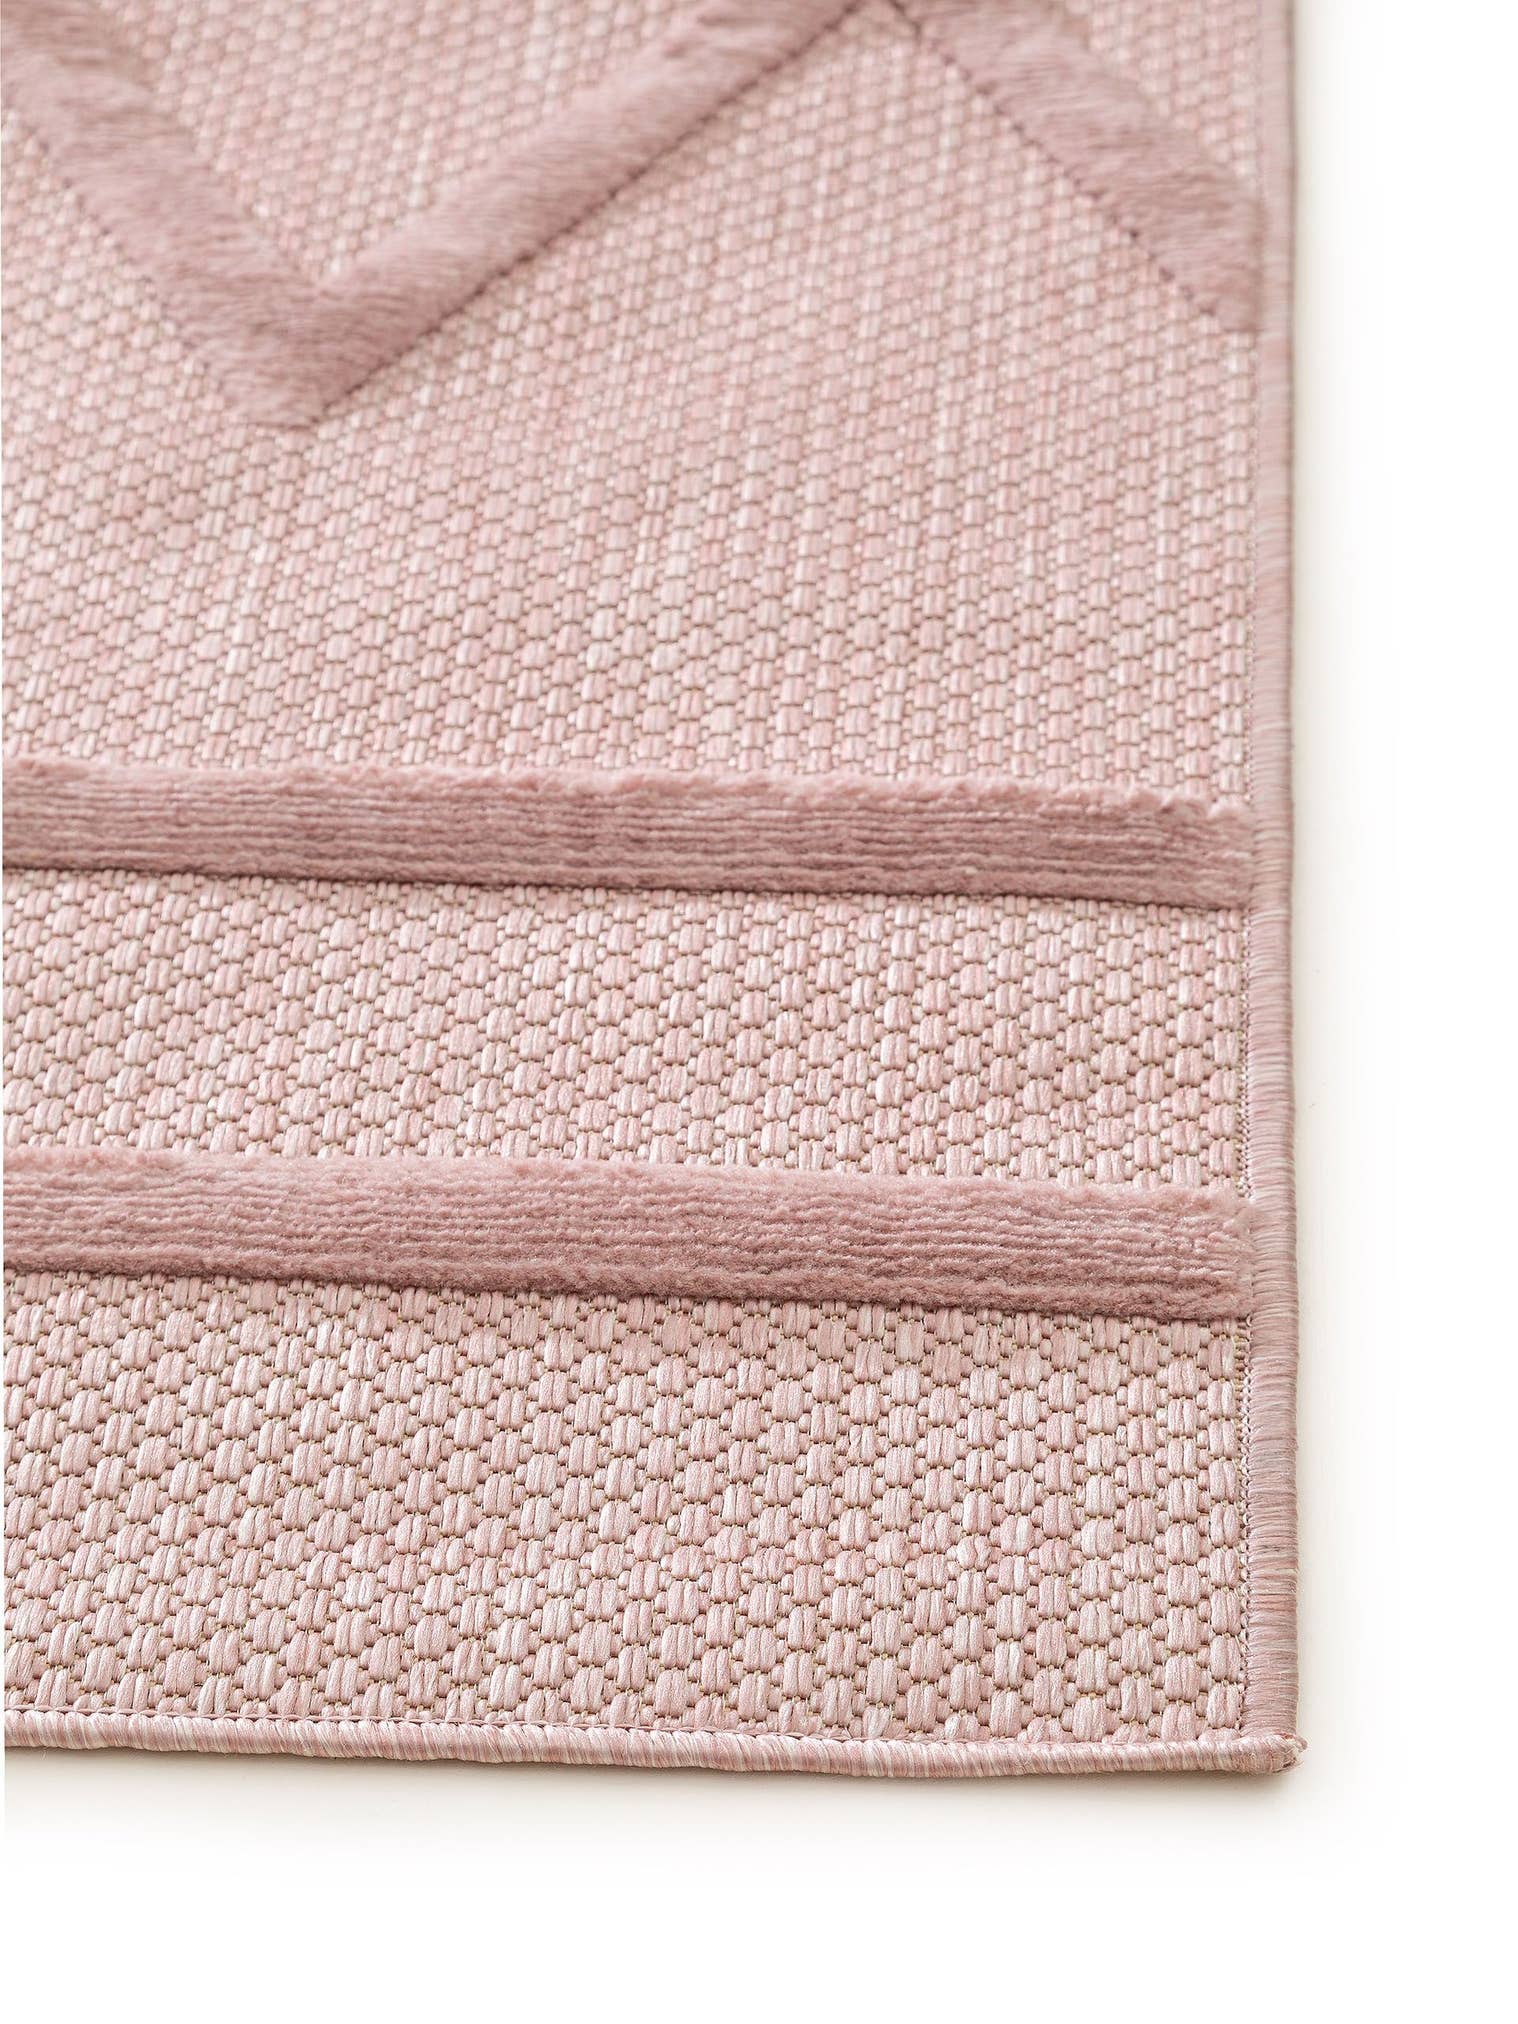 Teppich aus 100% Polypropylen in Rosa mit bis 5 mm hohem Flor von benuta Nest